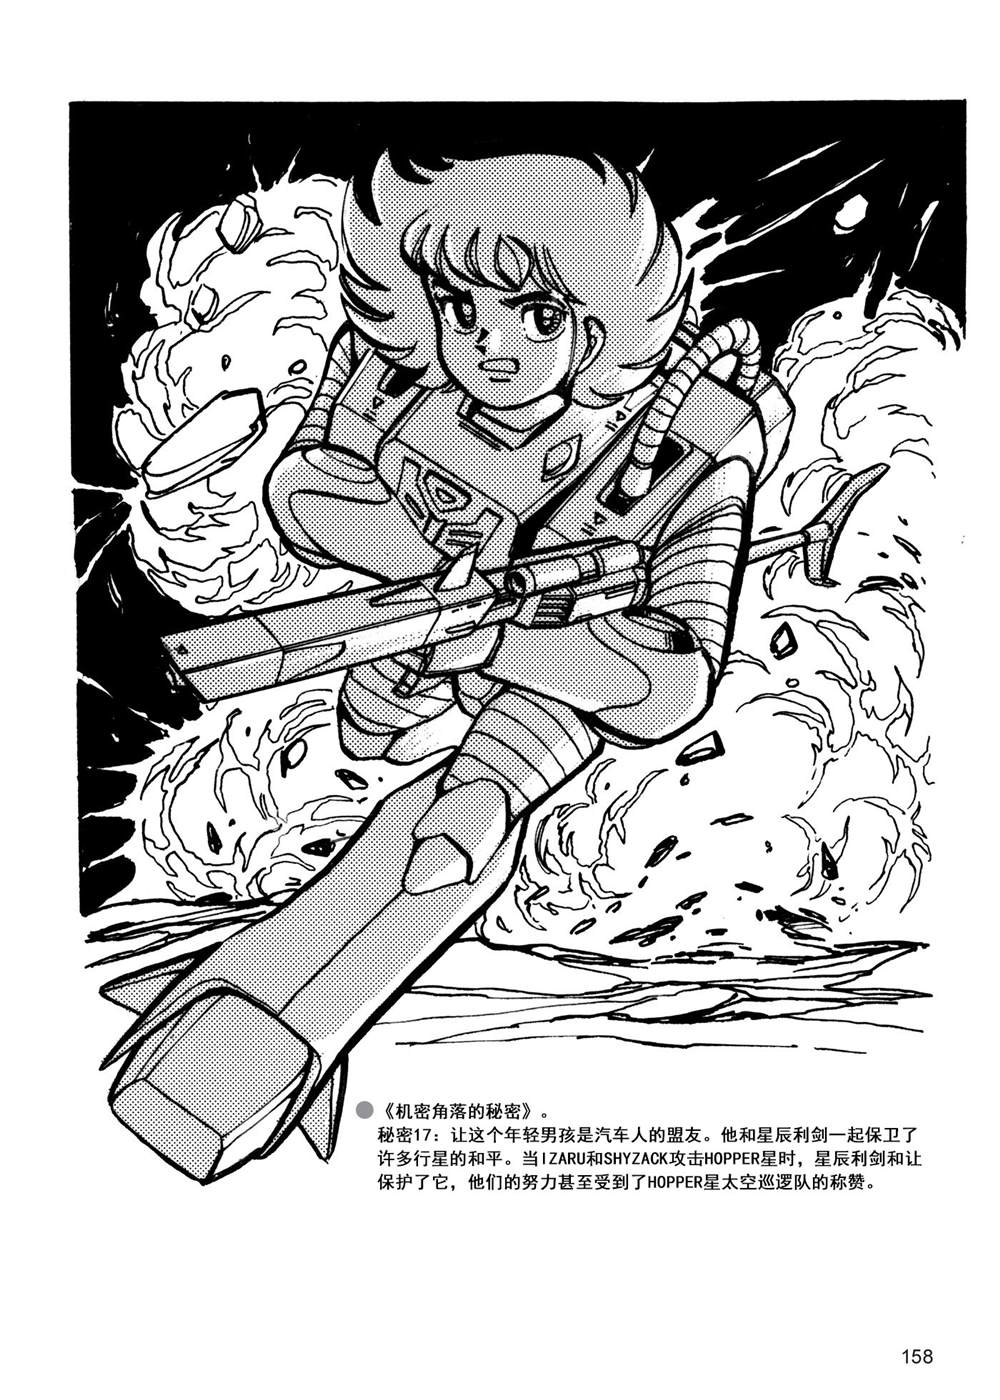 变形金刚日版G1杂志插画 - 战斗吧！超机械生命体变形金刚：胜利之斗争 - 1